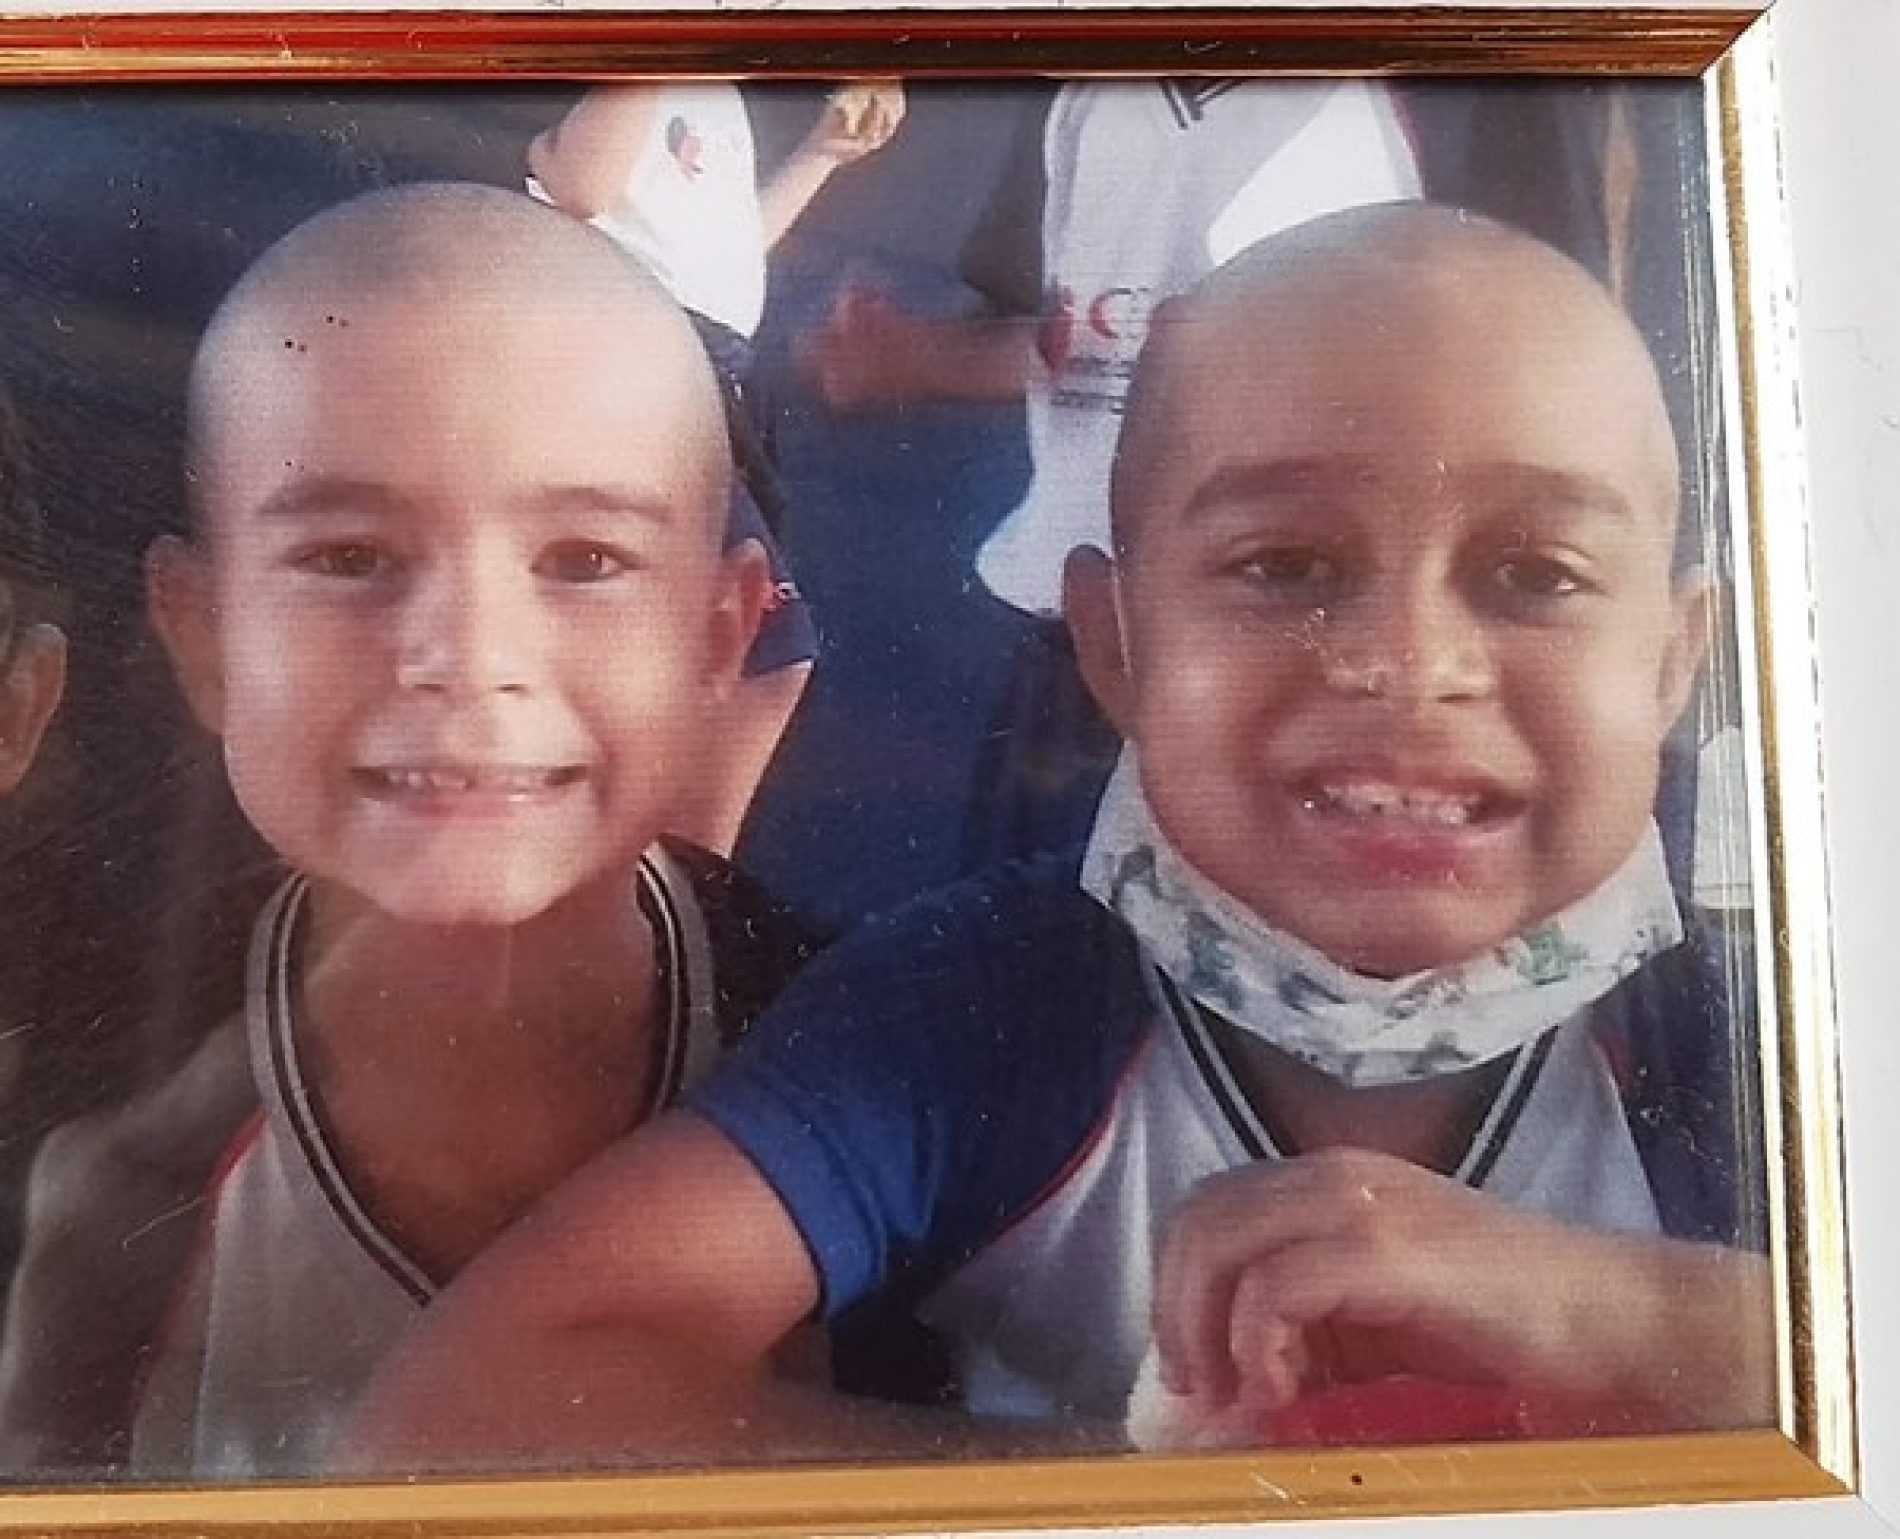 Dia do amigo: menino de 6 anos raspa cabelo para homenagear amigo com câncer em Mato Grosso